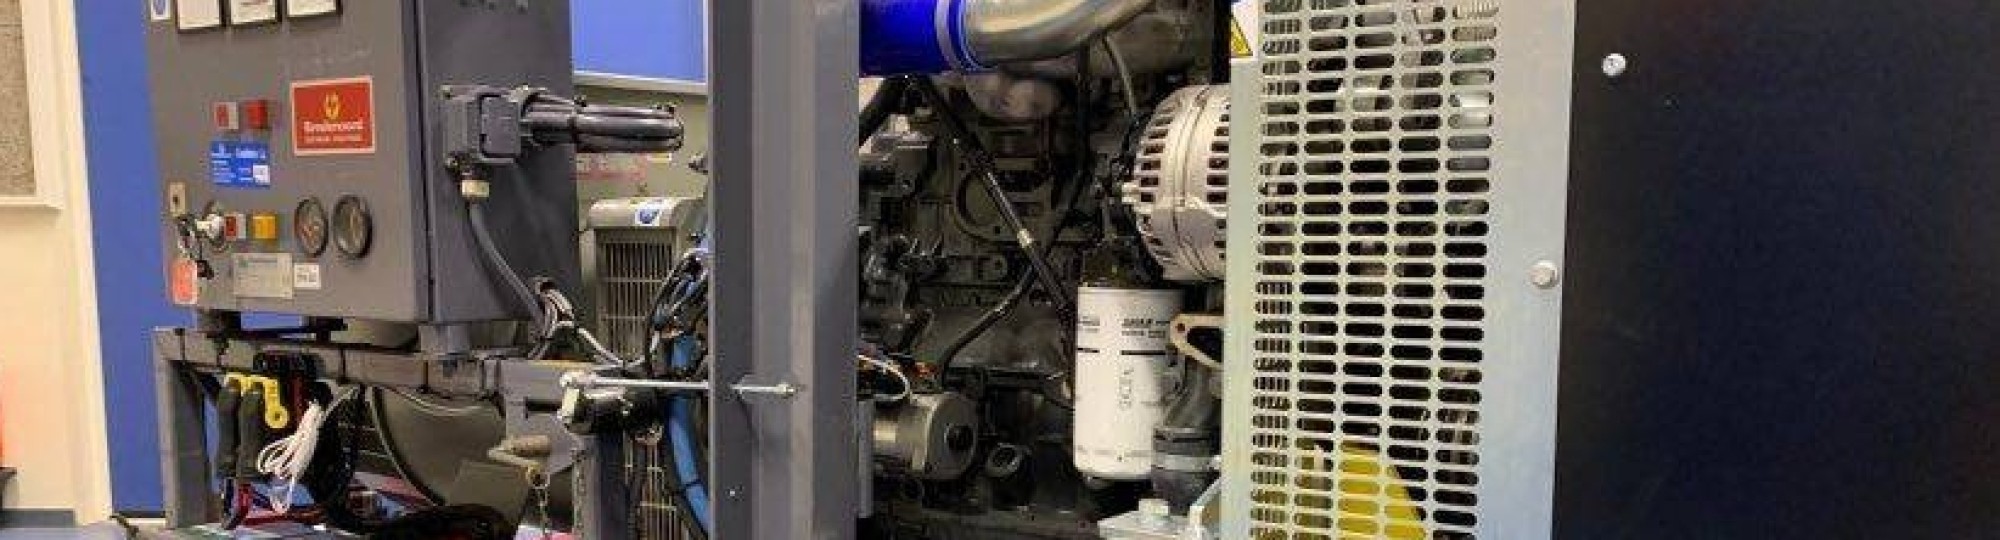 392142 Generatorset met FPT motor is aanwinst bij Automotive Research